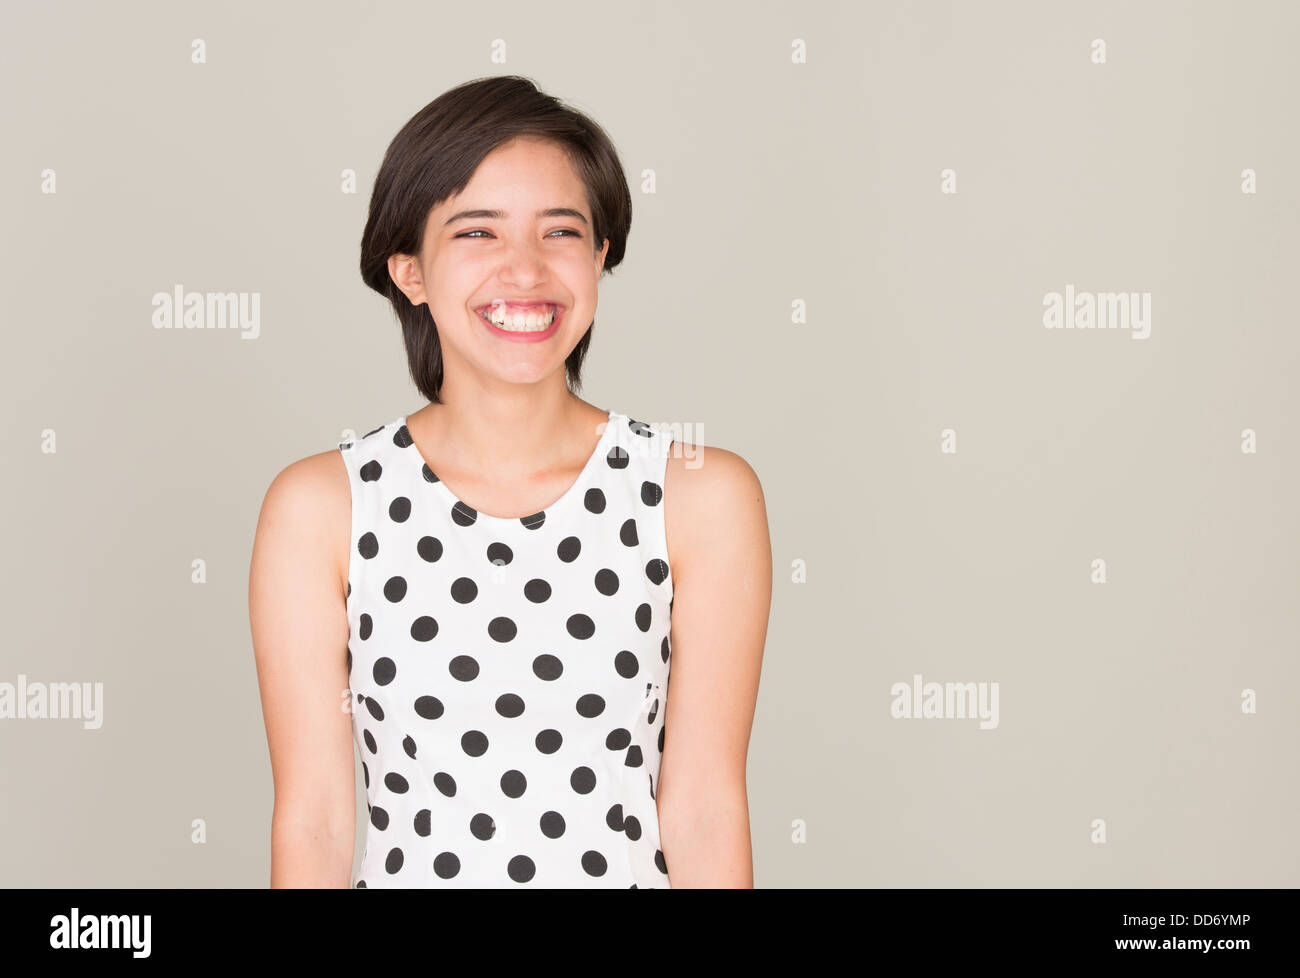 Glückliche junge Frau mit gepunkteten Kleid lachen Stockfoto